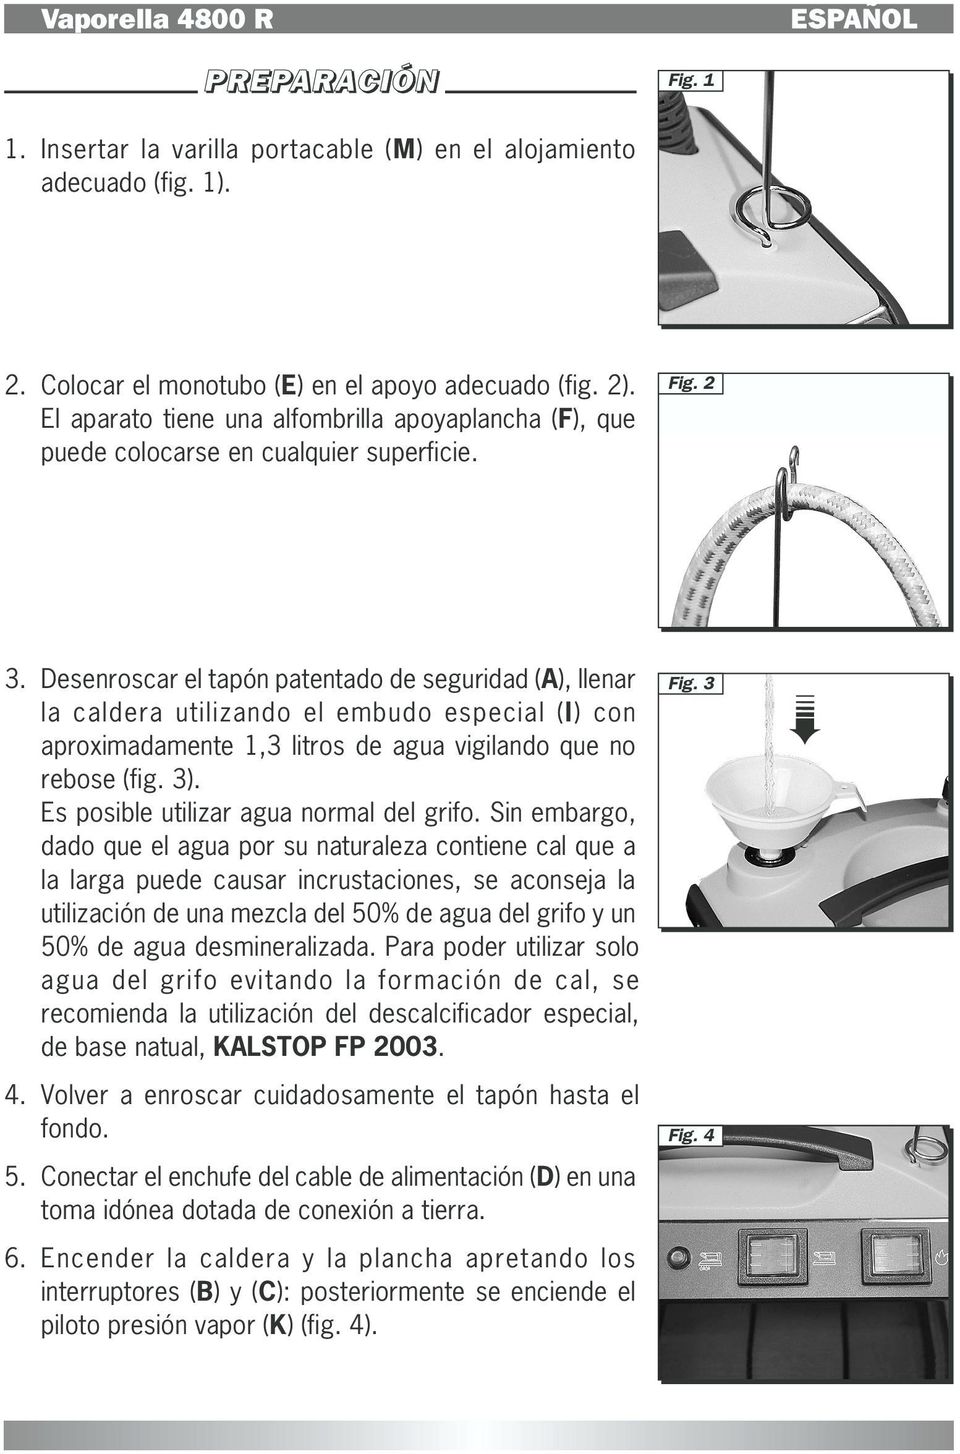 Desenroscar el tapón patentado de seguridad (A), llenar la caldera utilizando el embudo especial (I) con aproximadamente 1,3 litros de agua vigilando que no rebose (fig. 3).